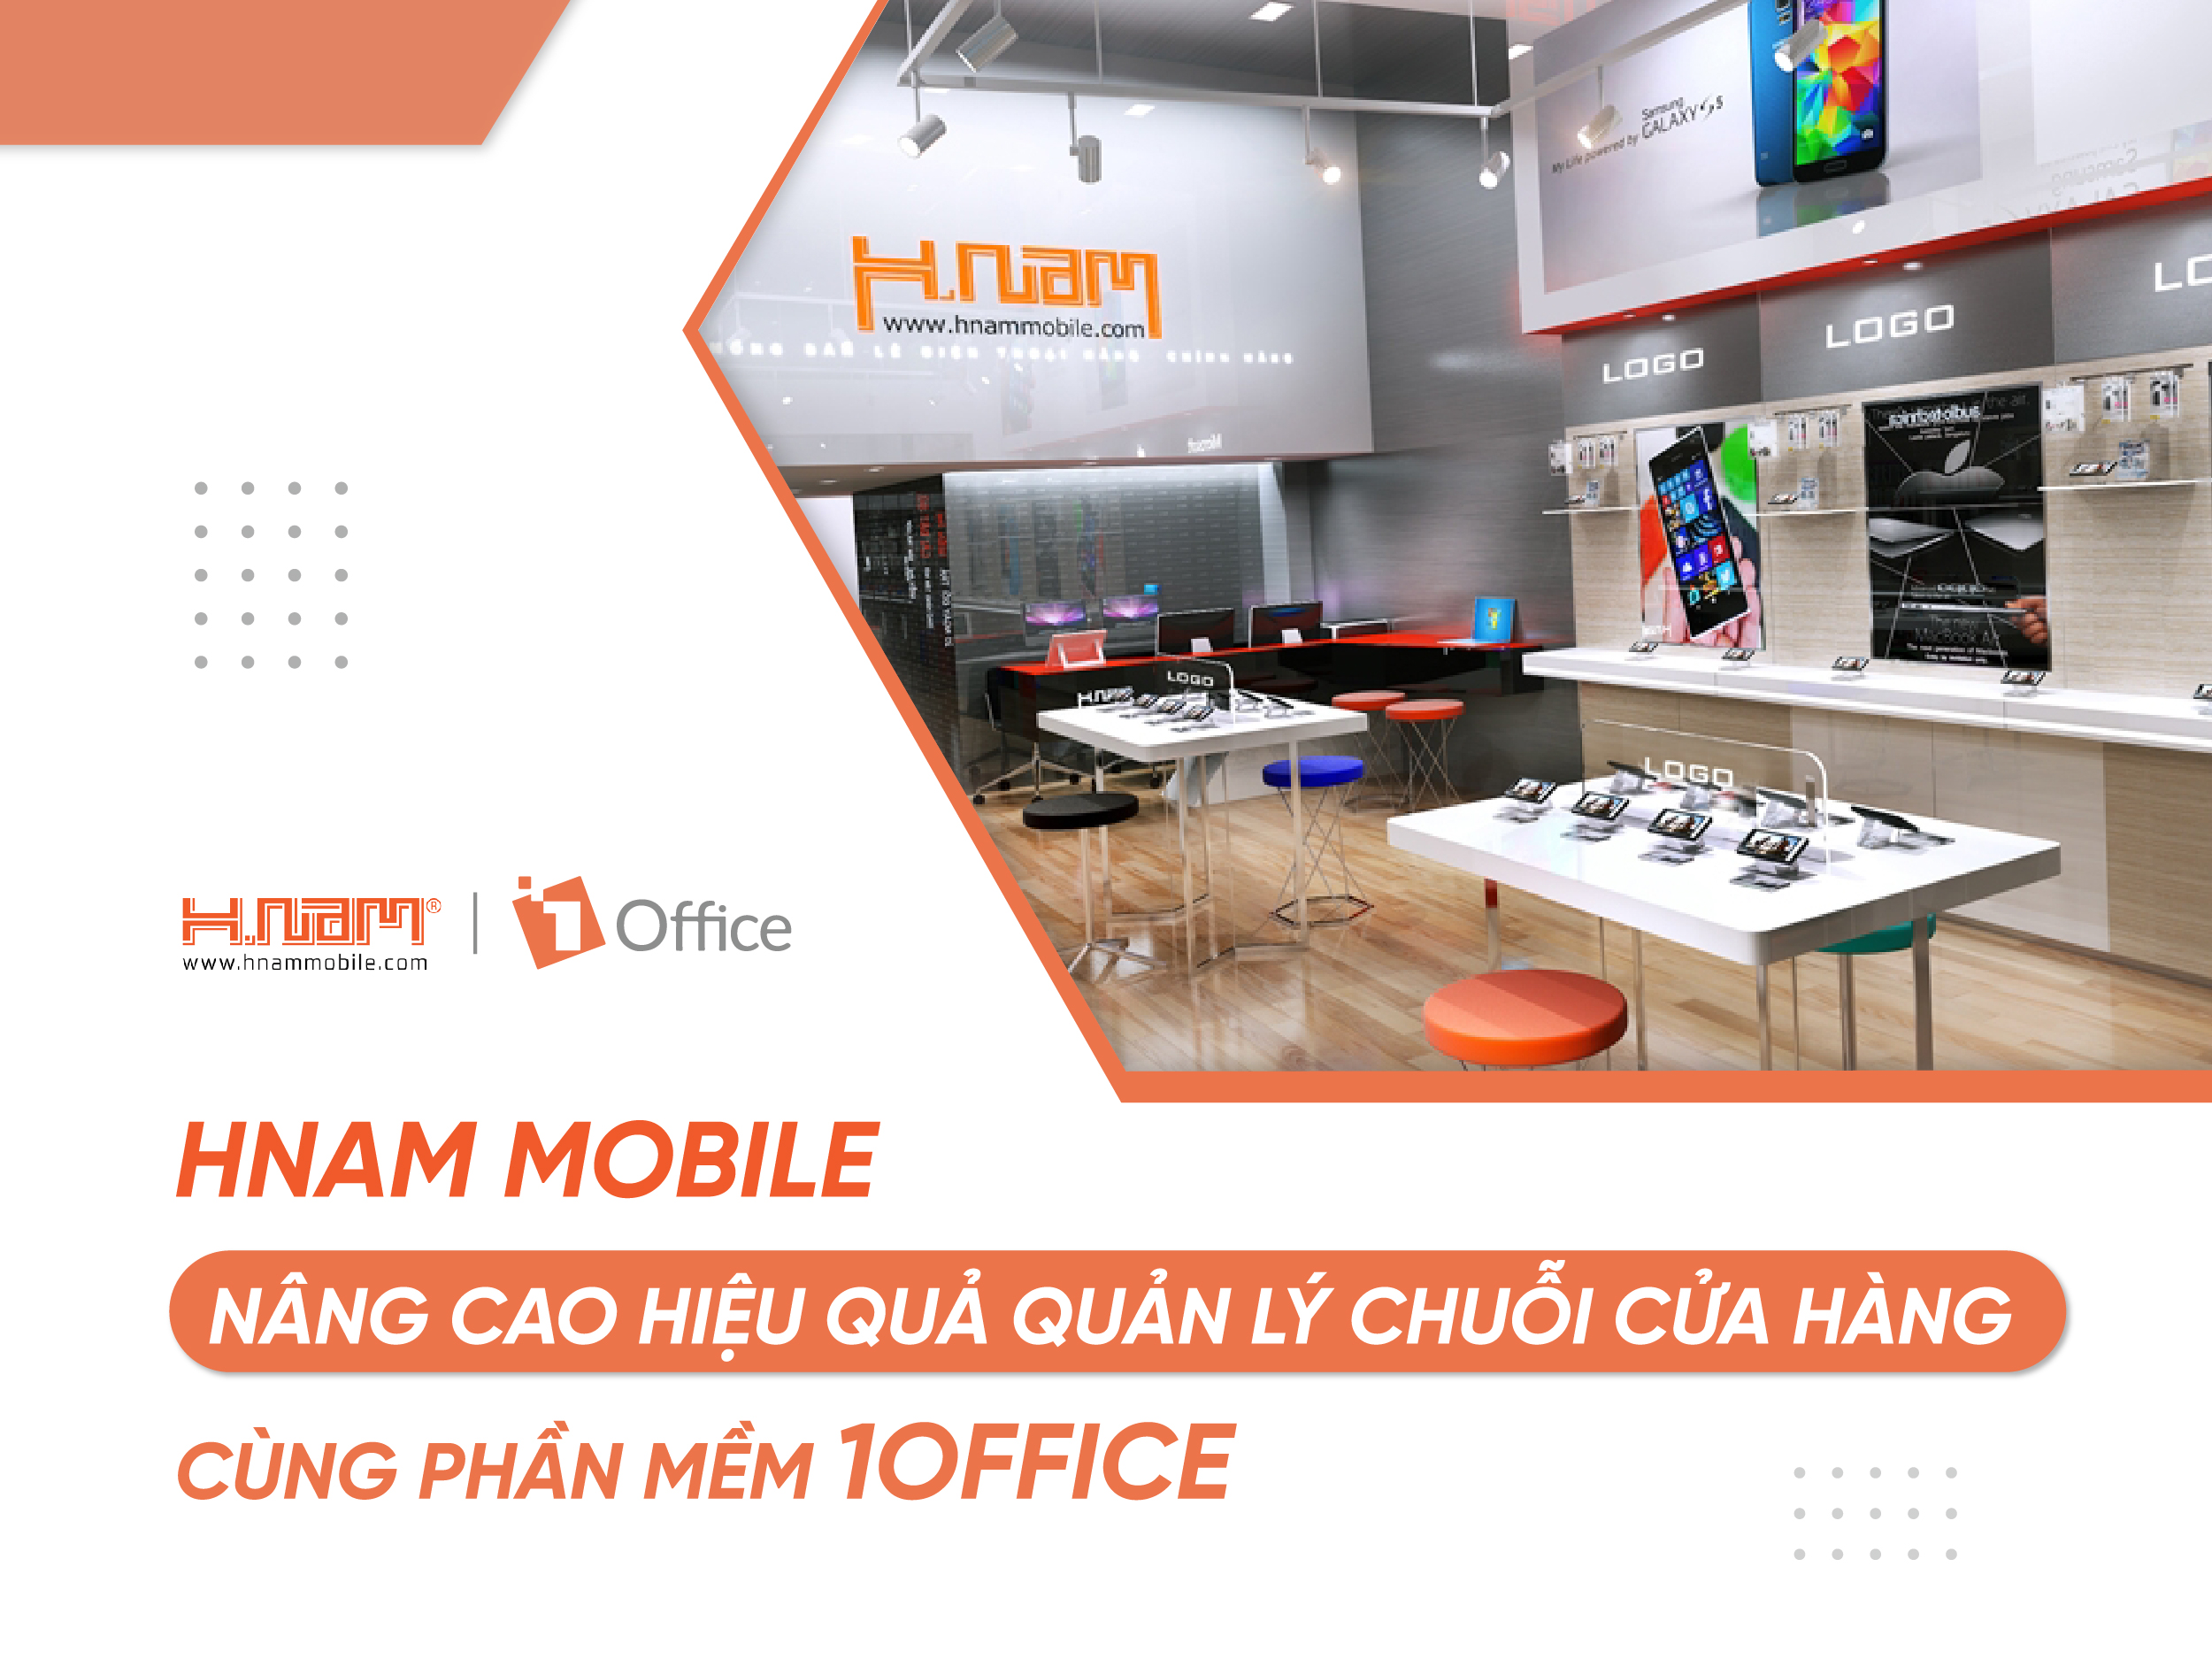 Hnam Mobile: Nâng cao hiệu quả quản lý chuỗi cửa hàng cùng phần mềm 1Office